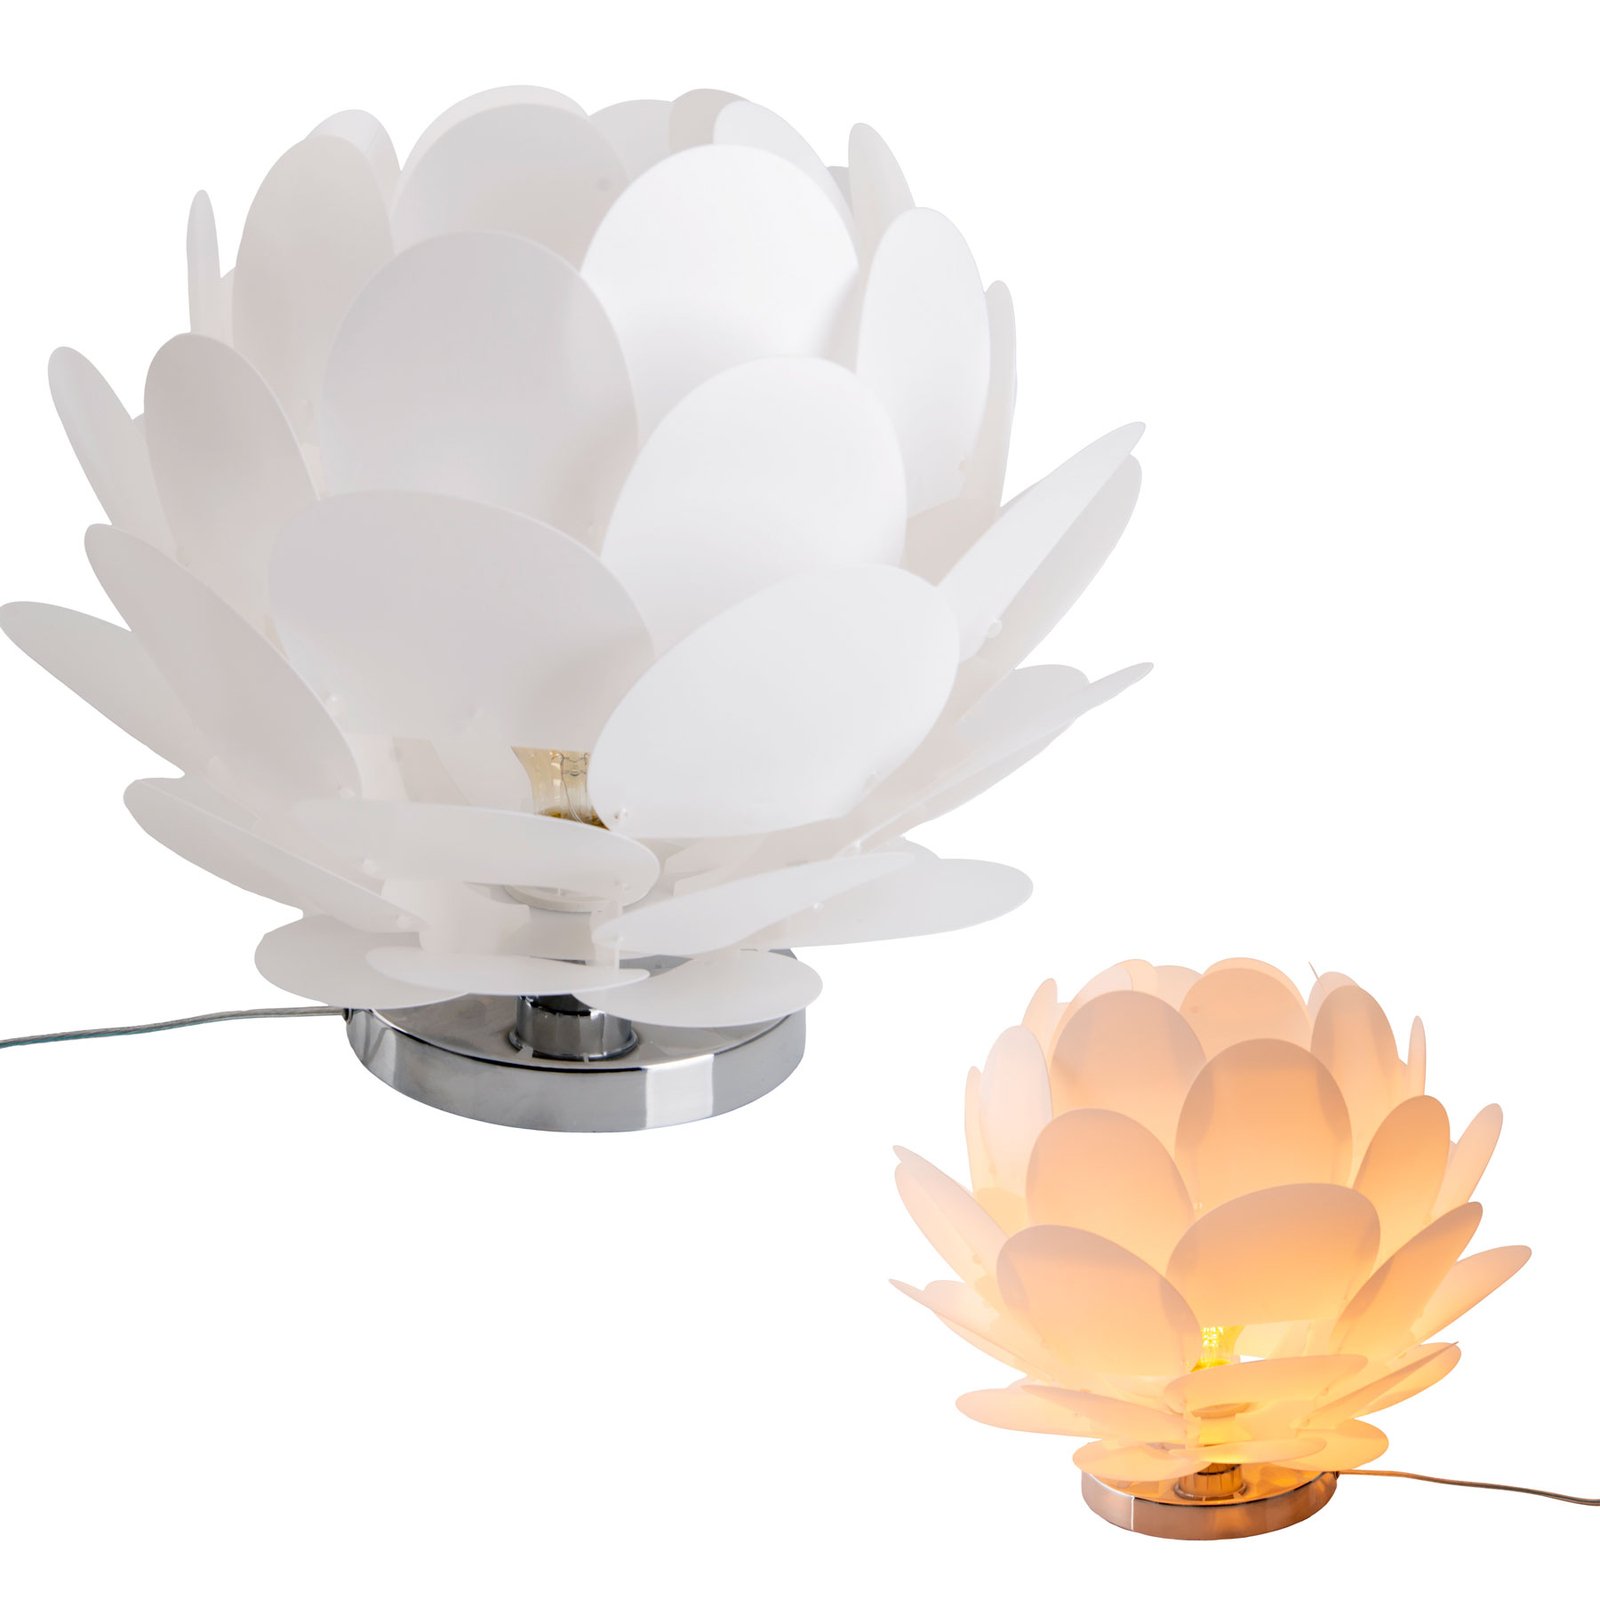 Bordslampa Fora i blomform, vit